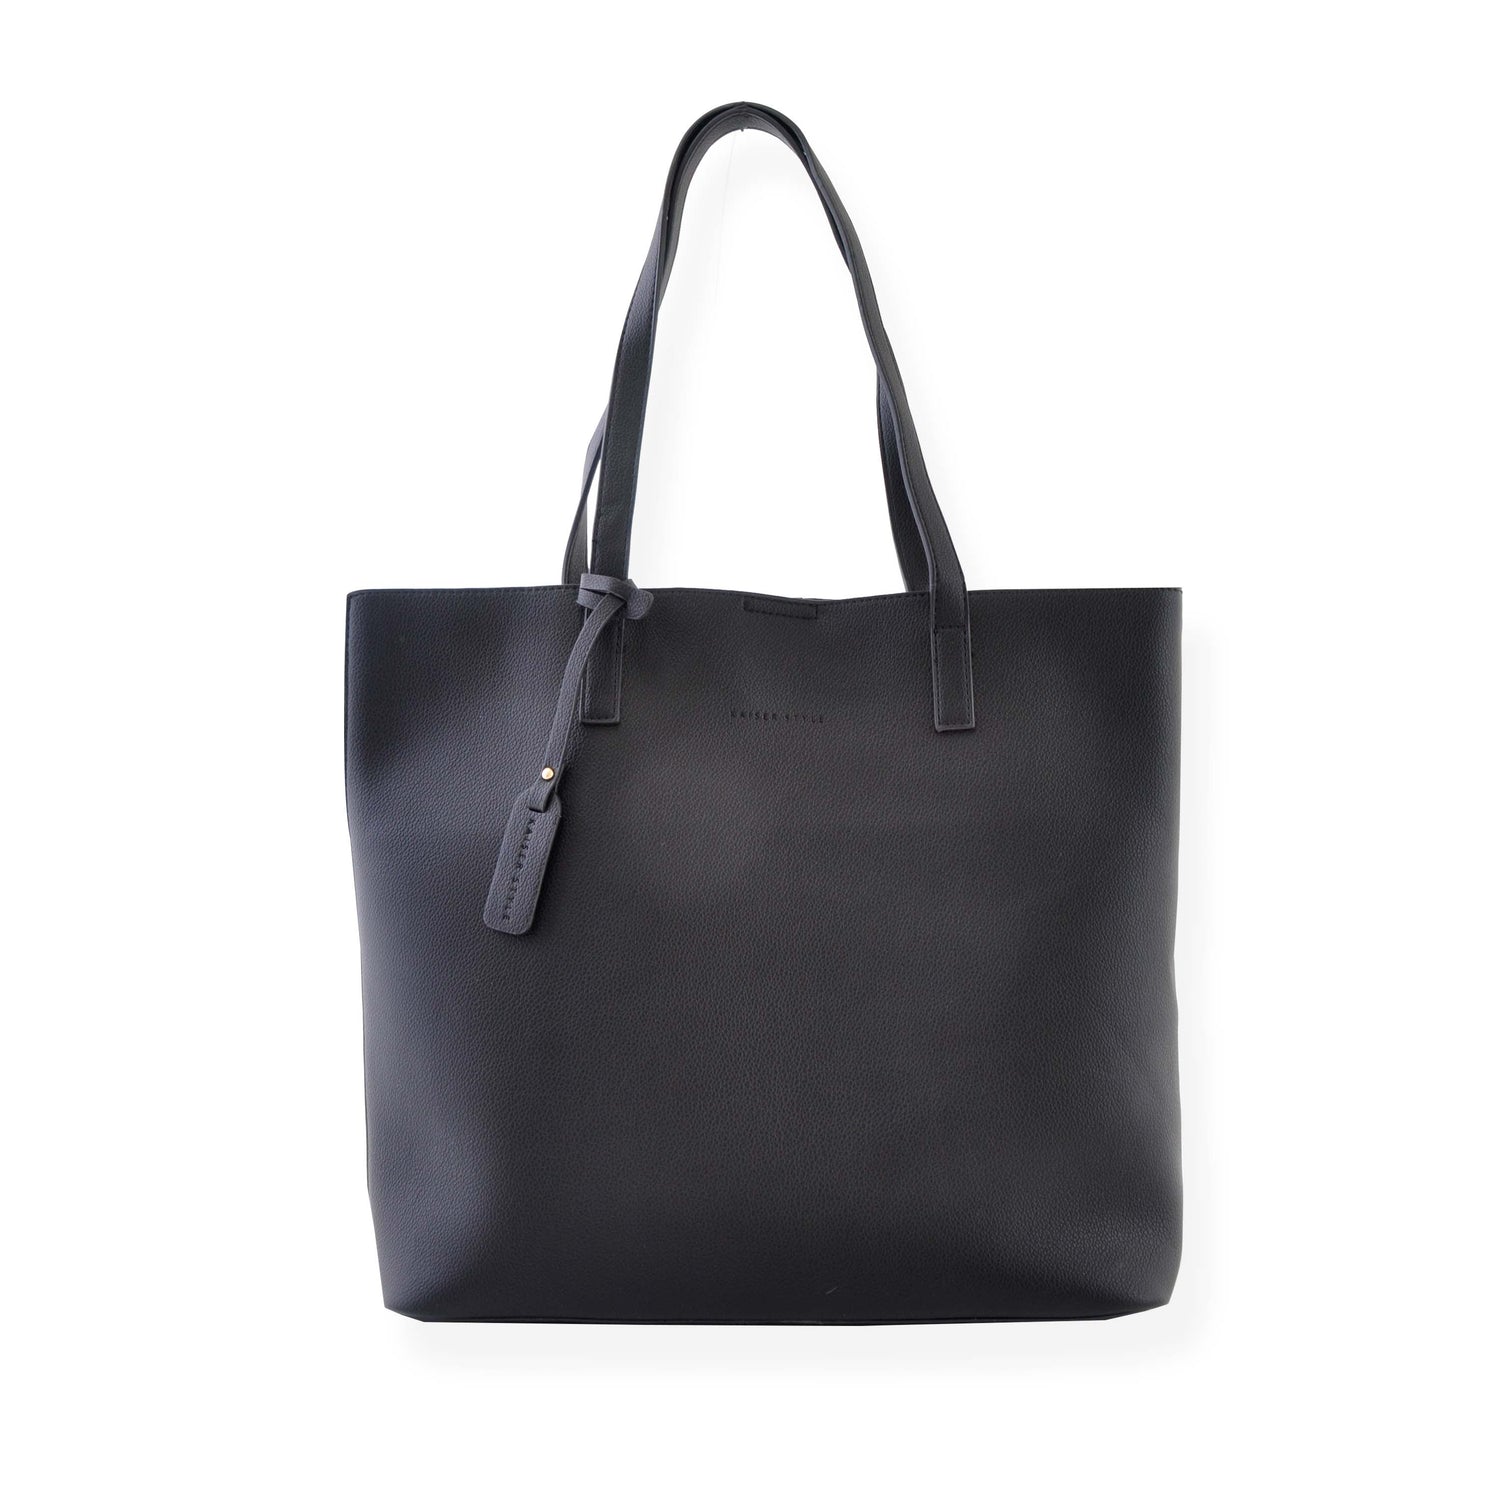 Fashion - Bags - Large Handbags